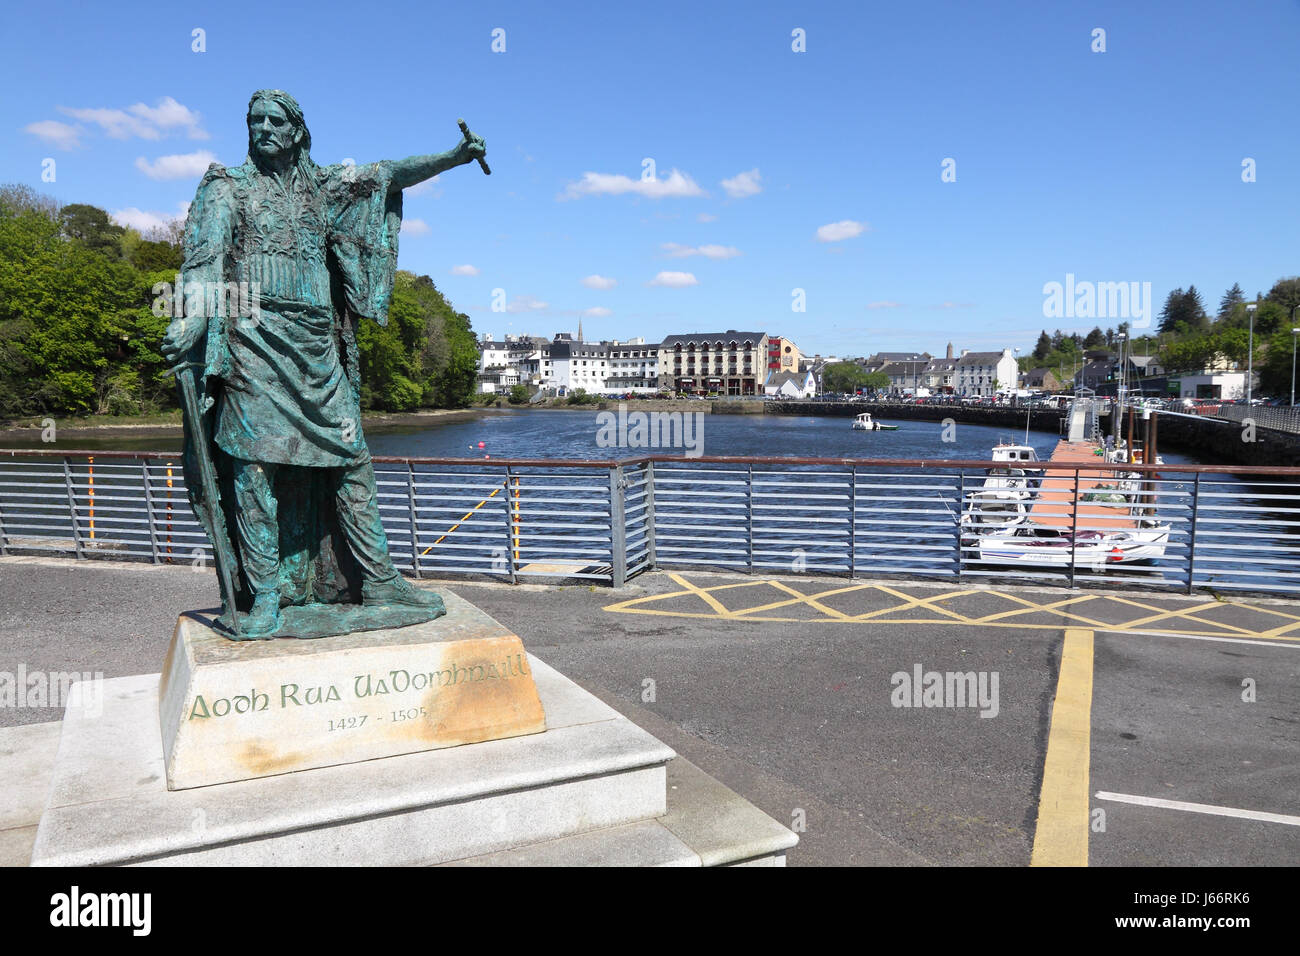 Statua di bronzo di Red Hugh O'Donnell sul molo di Donegal, Irlanda Foto Stock